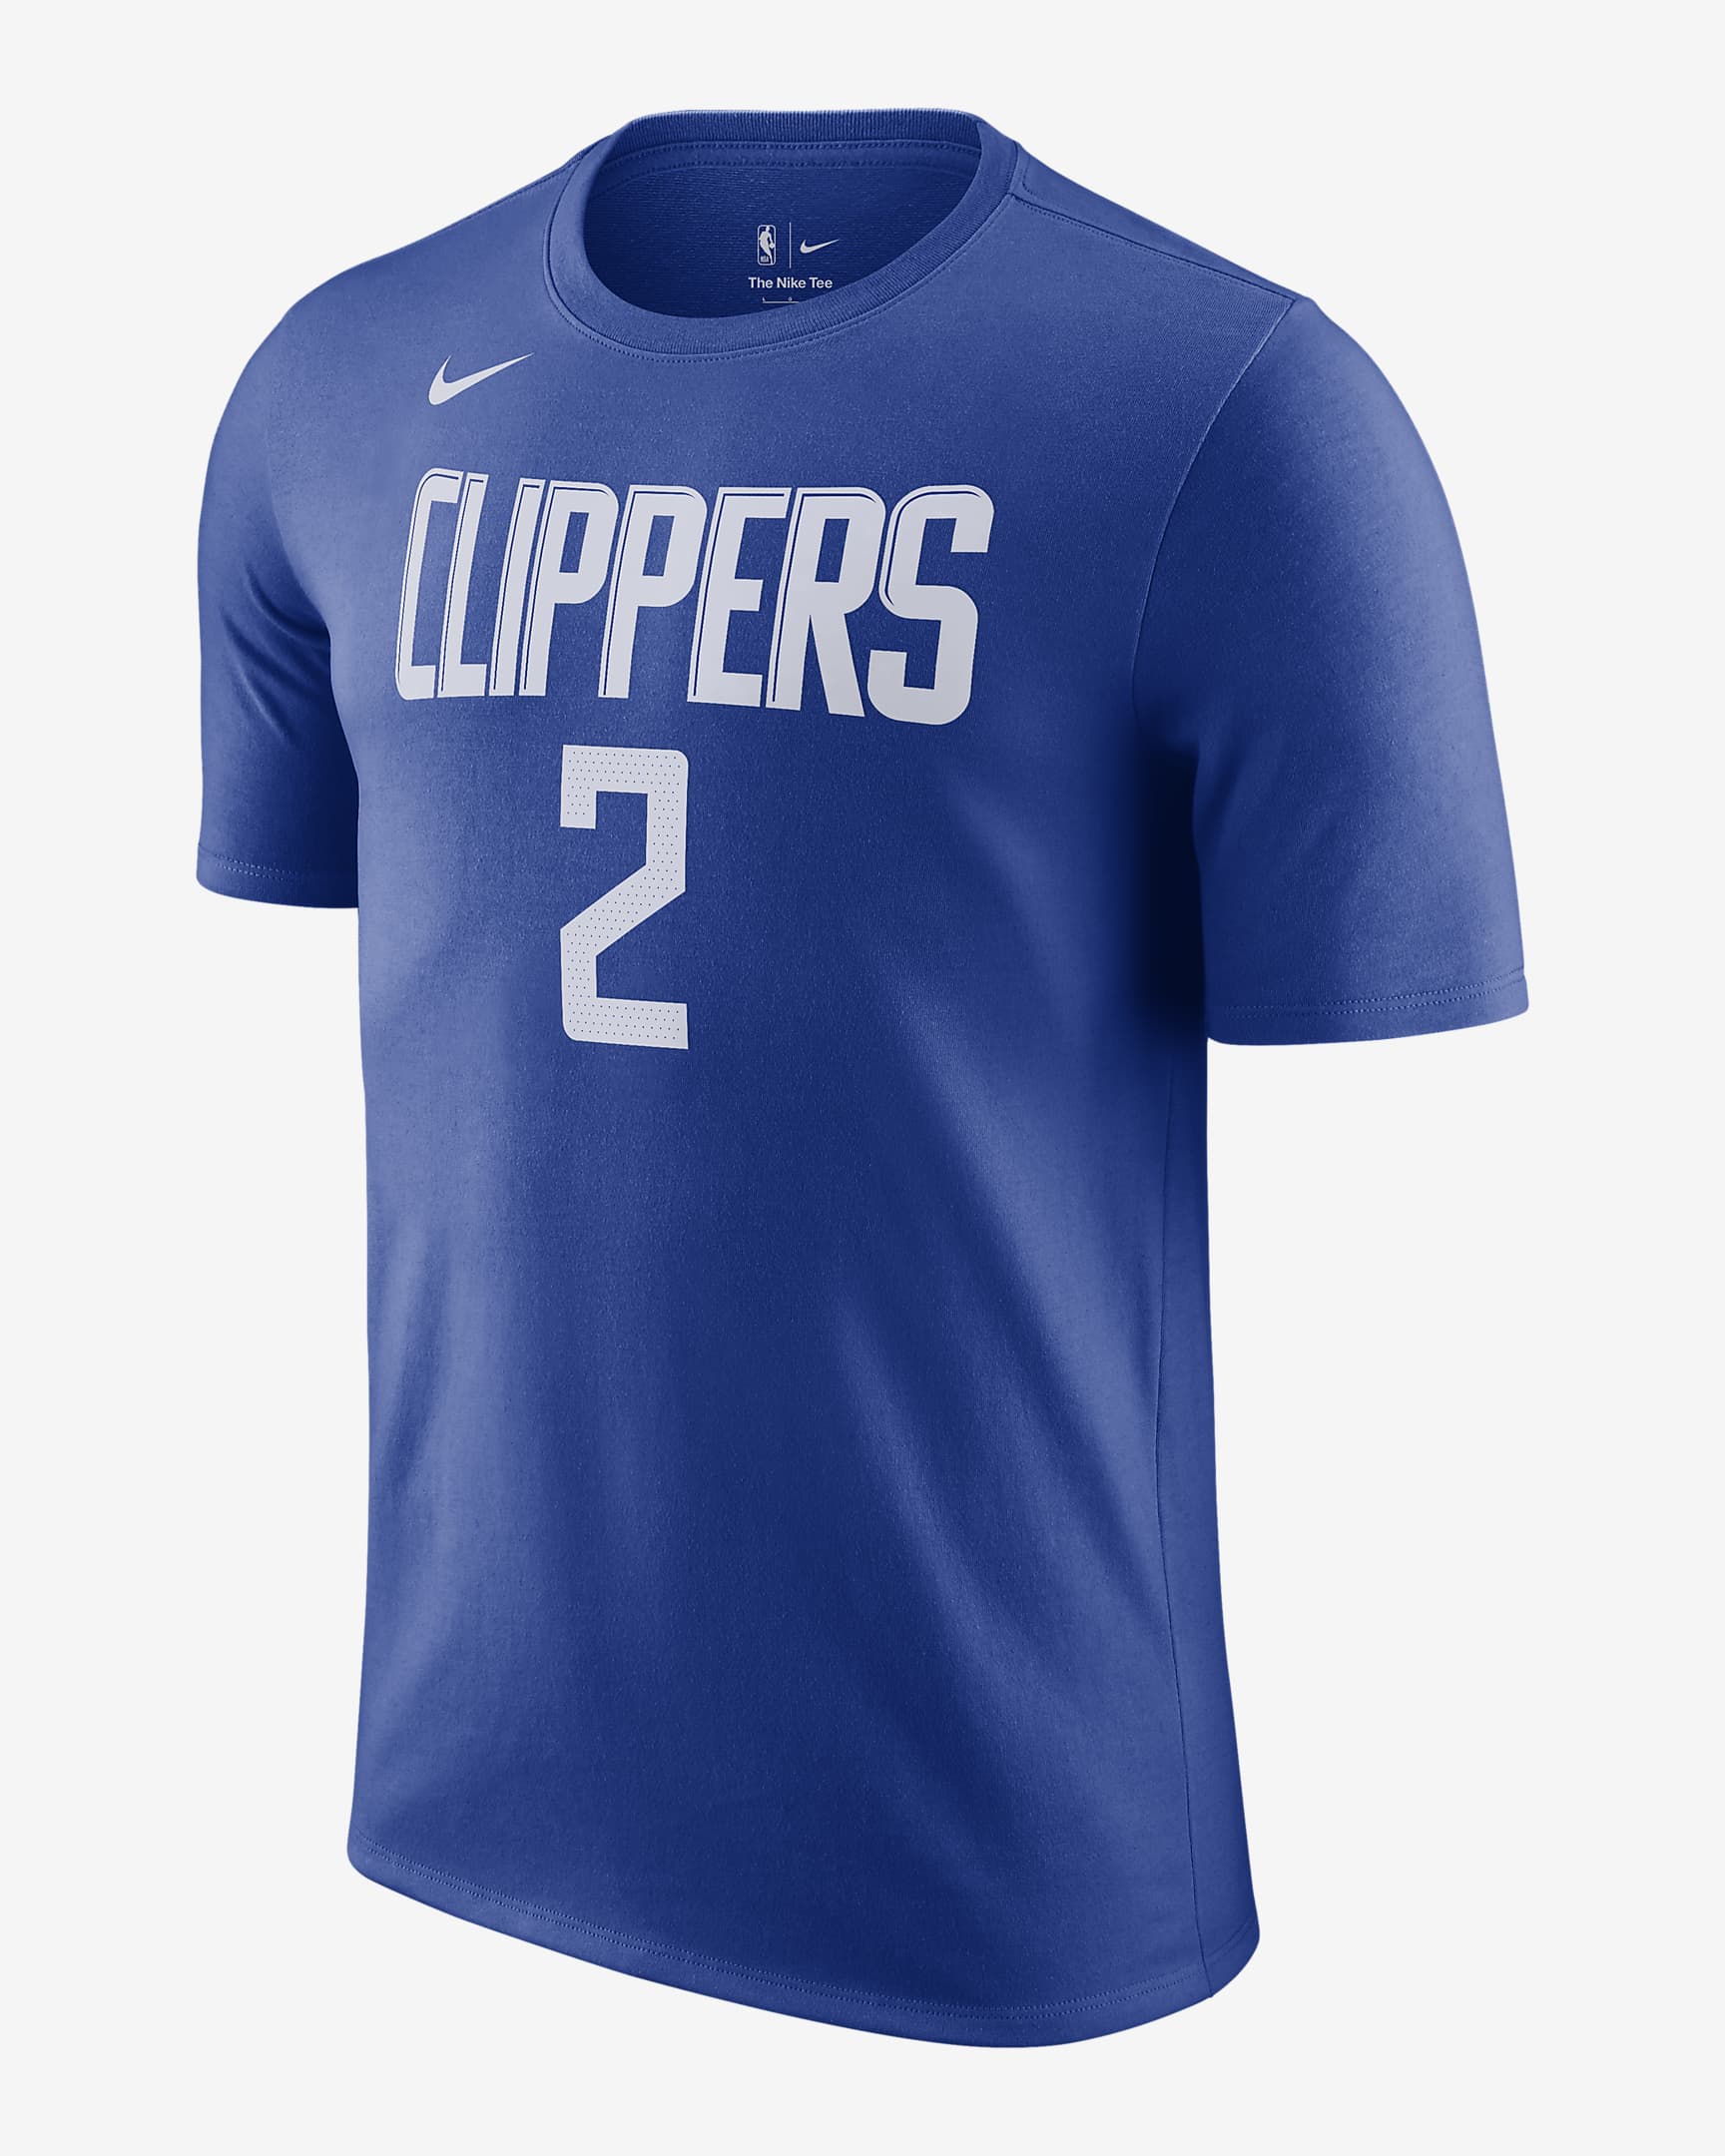 Playera Nike NBA para hombre LA Clippers. Nike.com